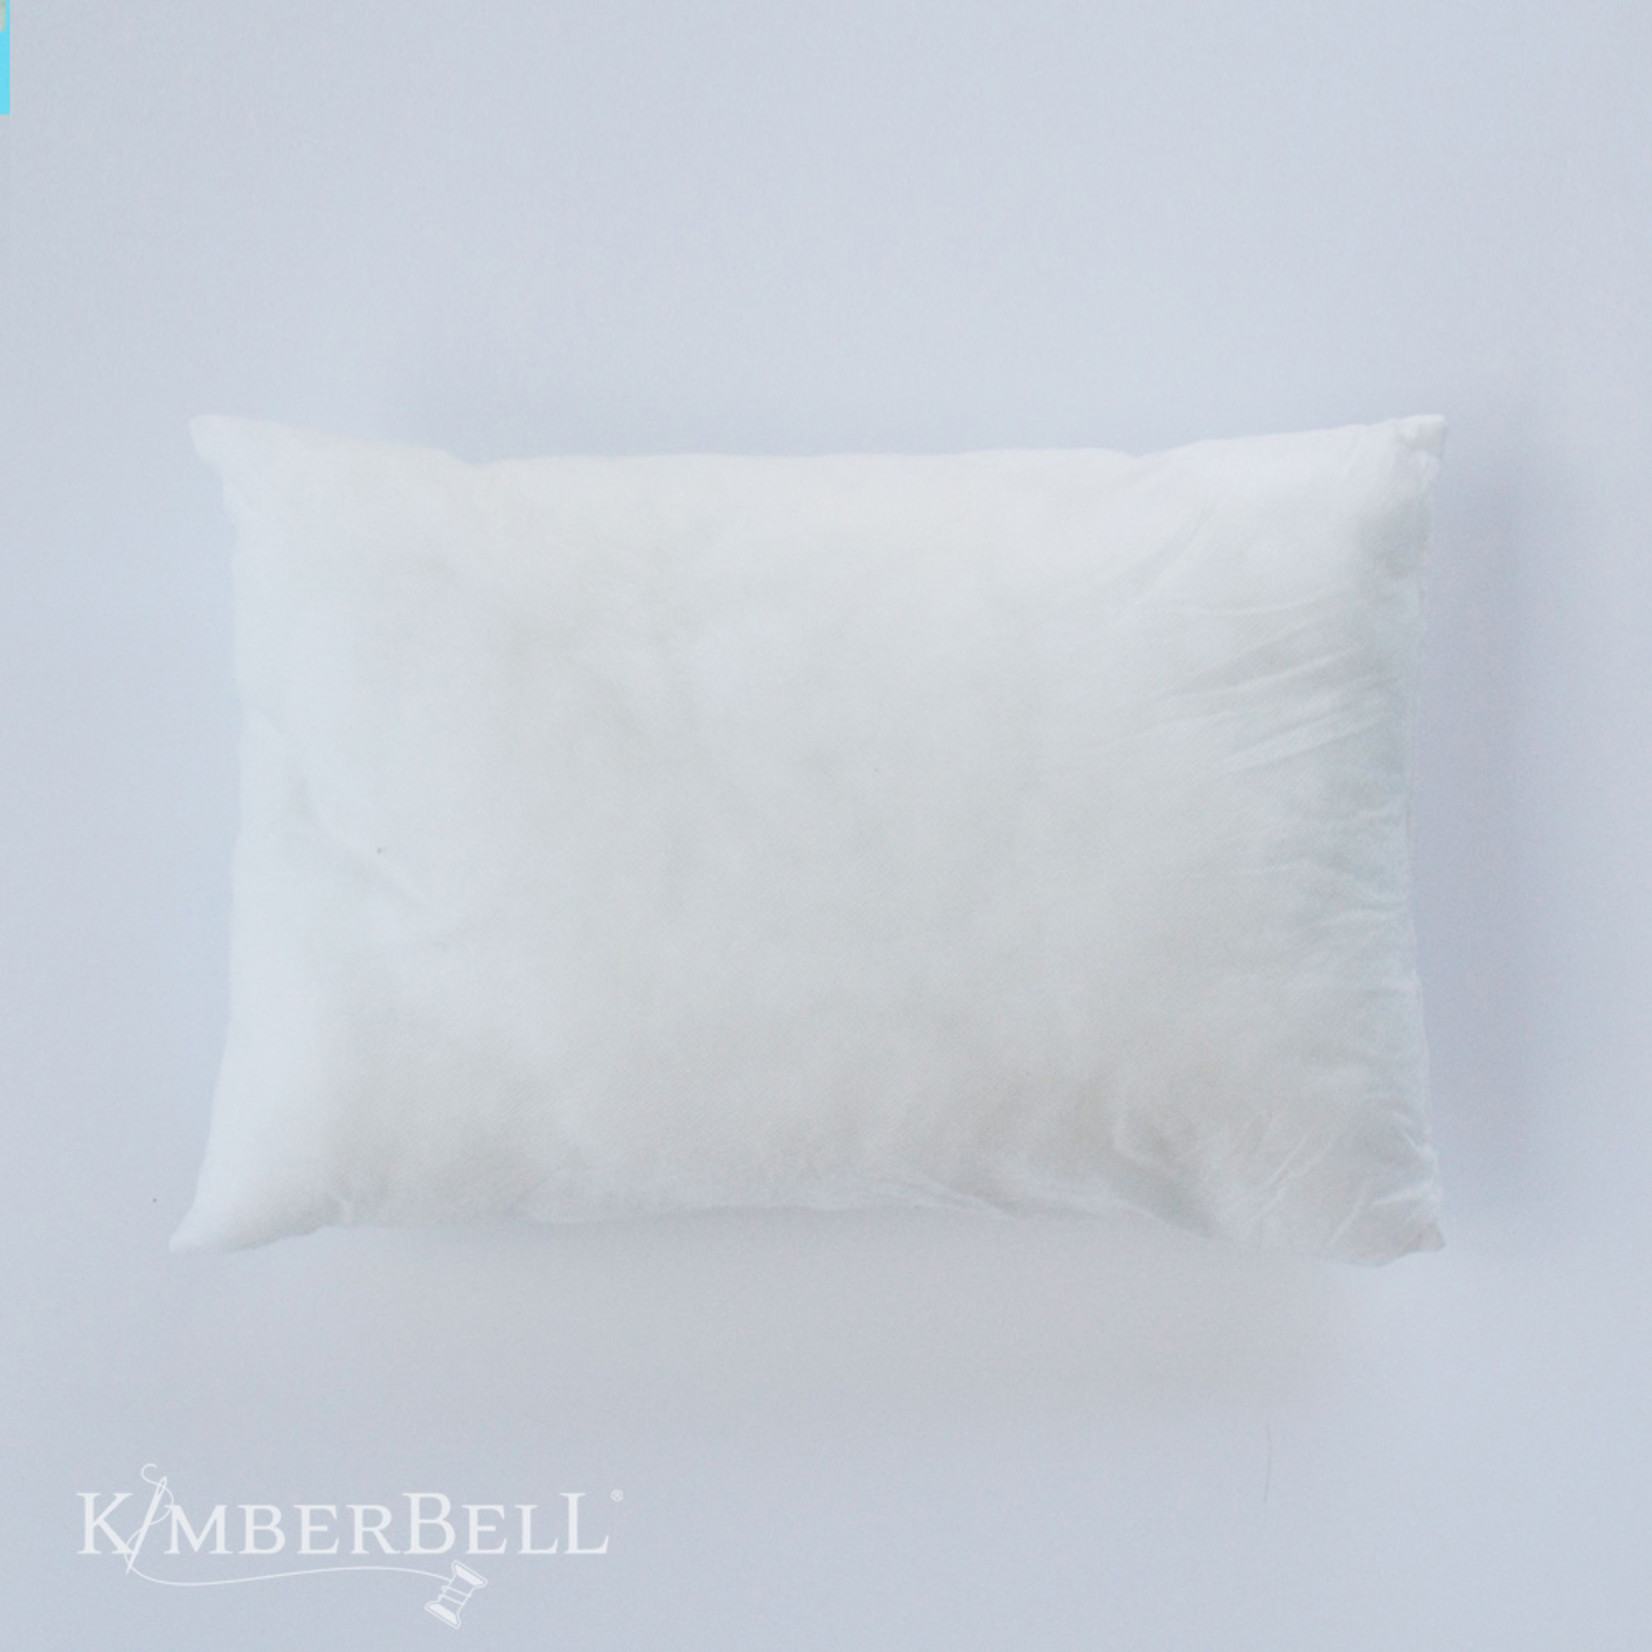 Kimberbell Designs Pillow Insert, 12 x 18"